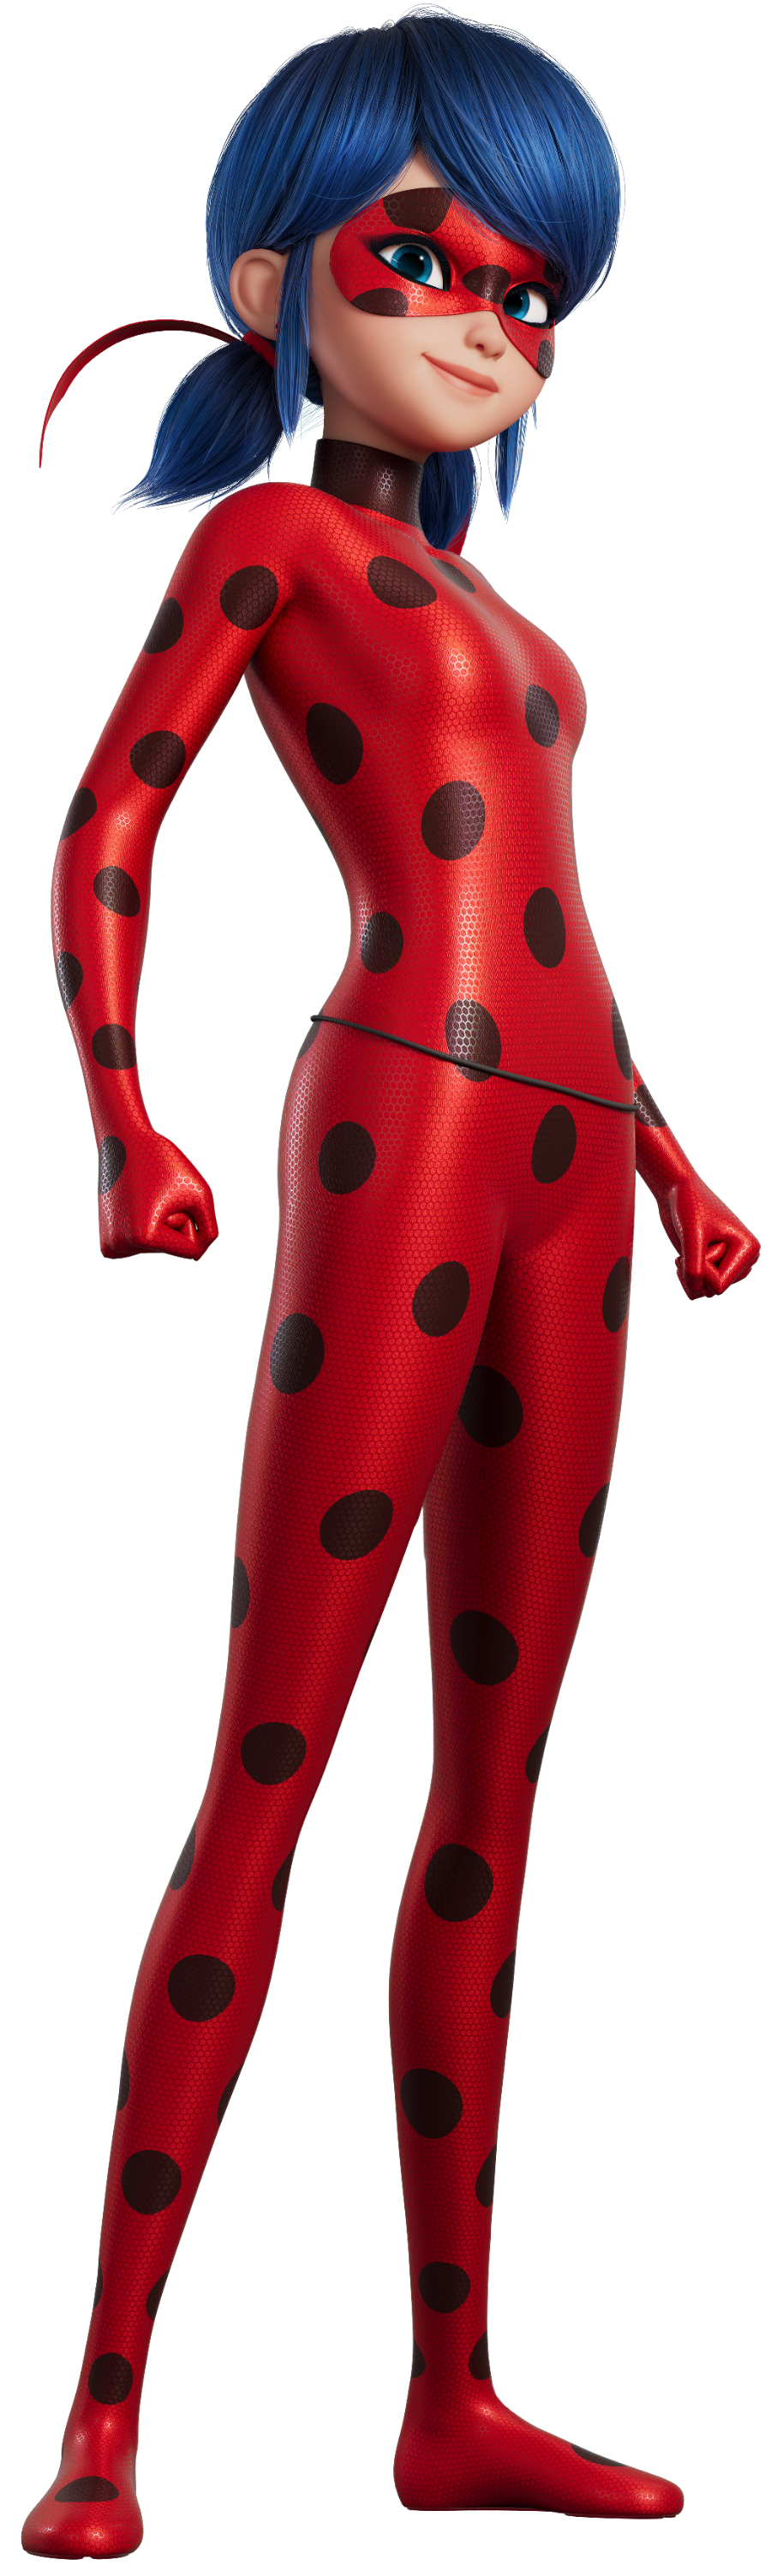 Miraculous Ladybug - The movie